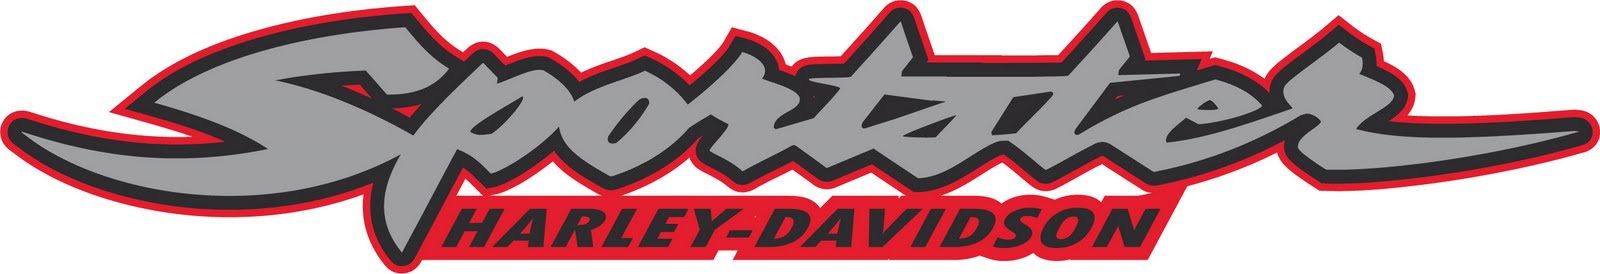 Logos For > Harley Davidson Sportster Logo Vector